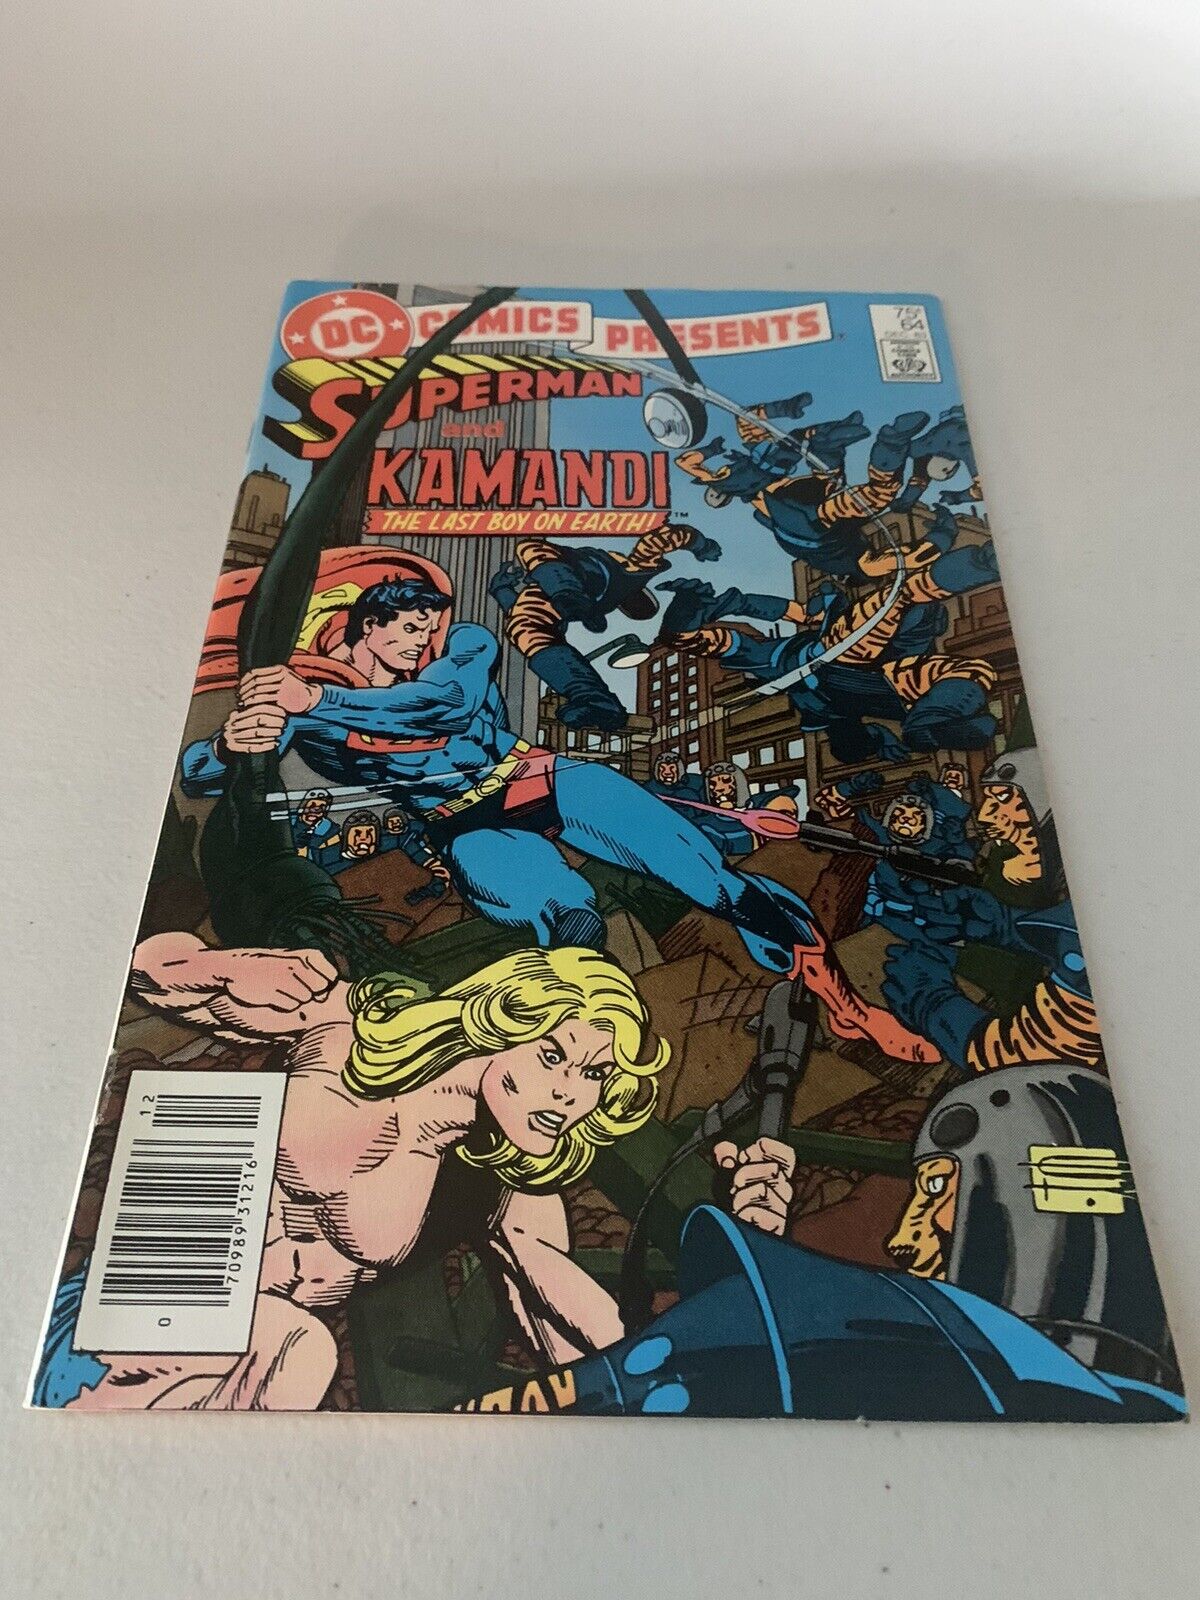 DC Comics Presents Vol. 6 #64 (Dec 1983) DC Comics Superman Kamandi